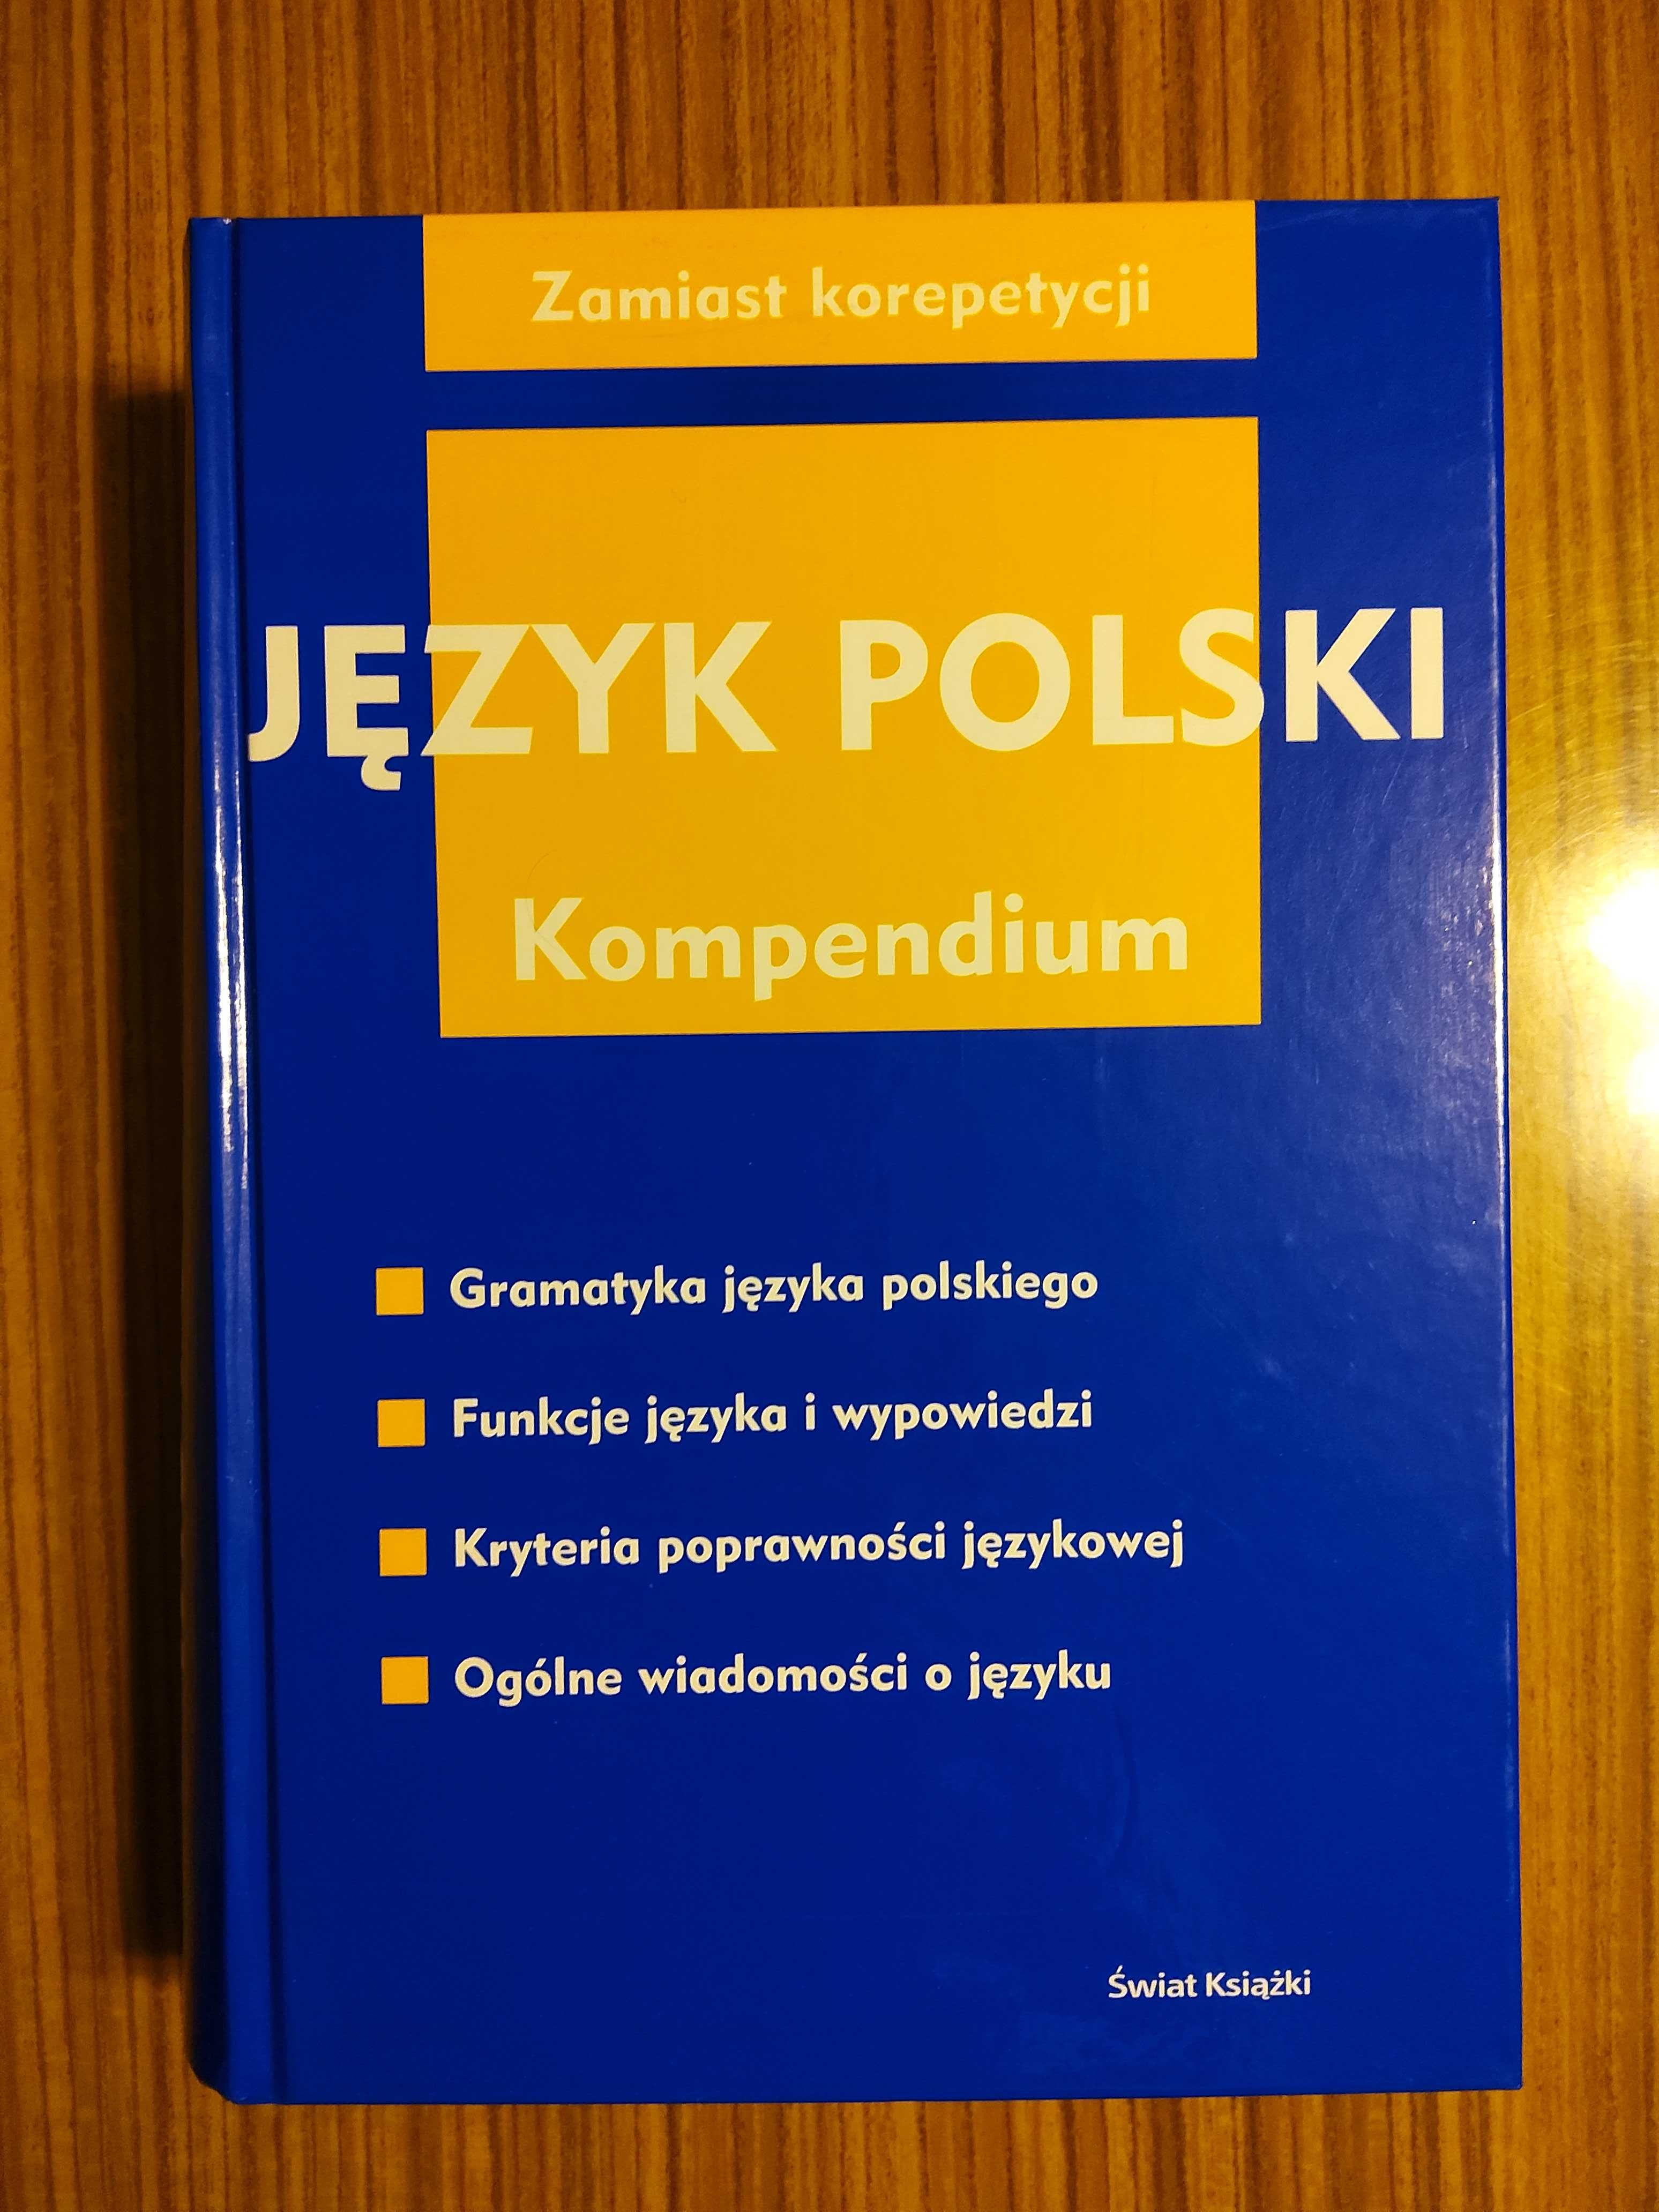 Język polski Kompendium (wiedzy) zamiast korepetycji